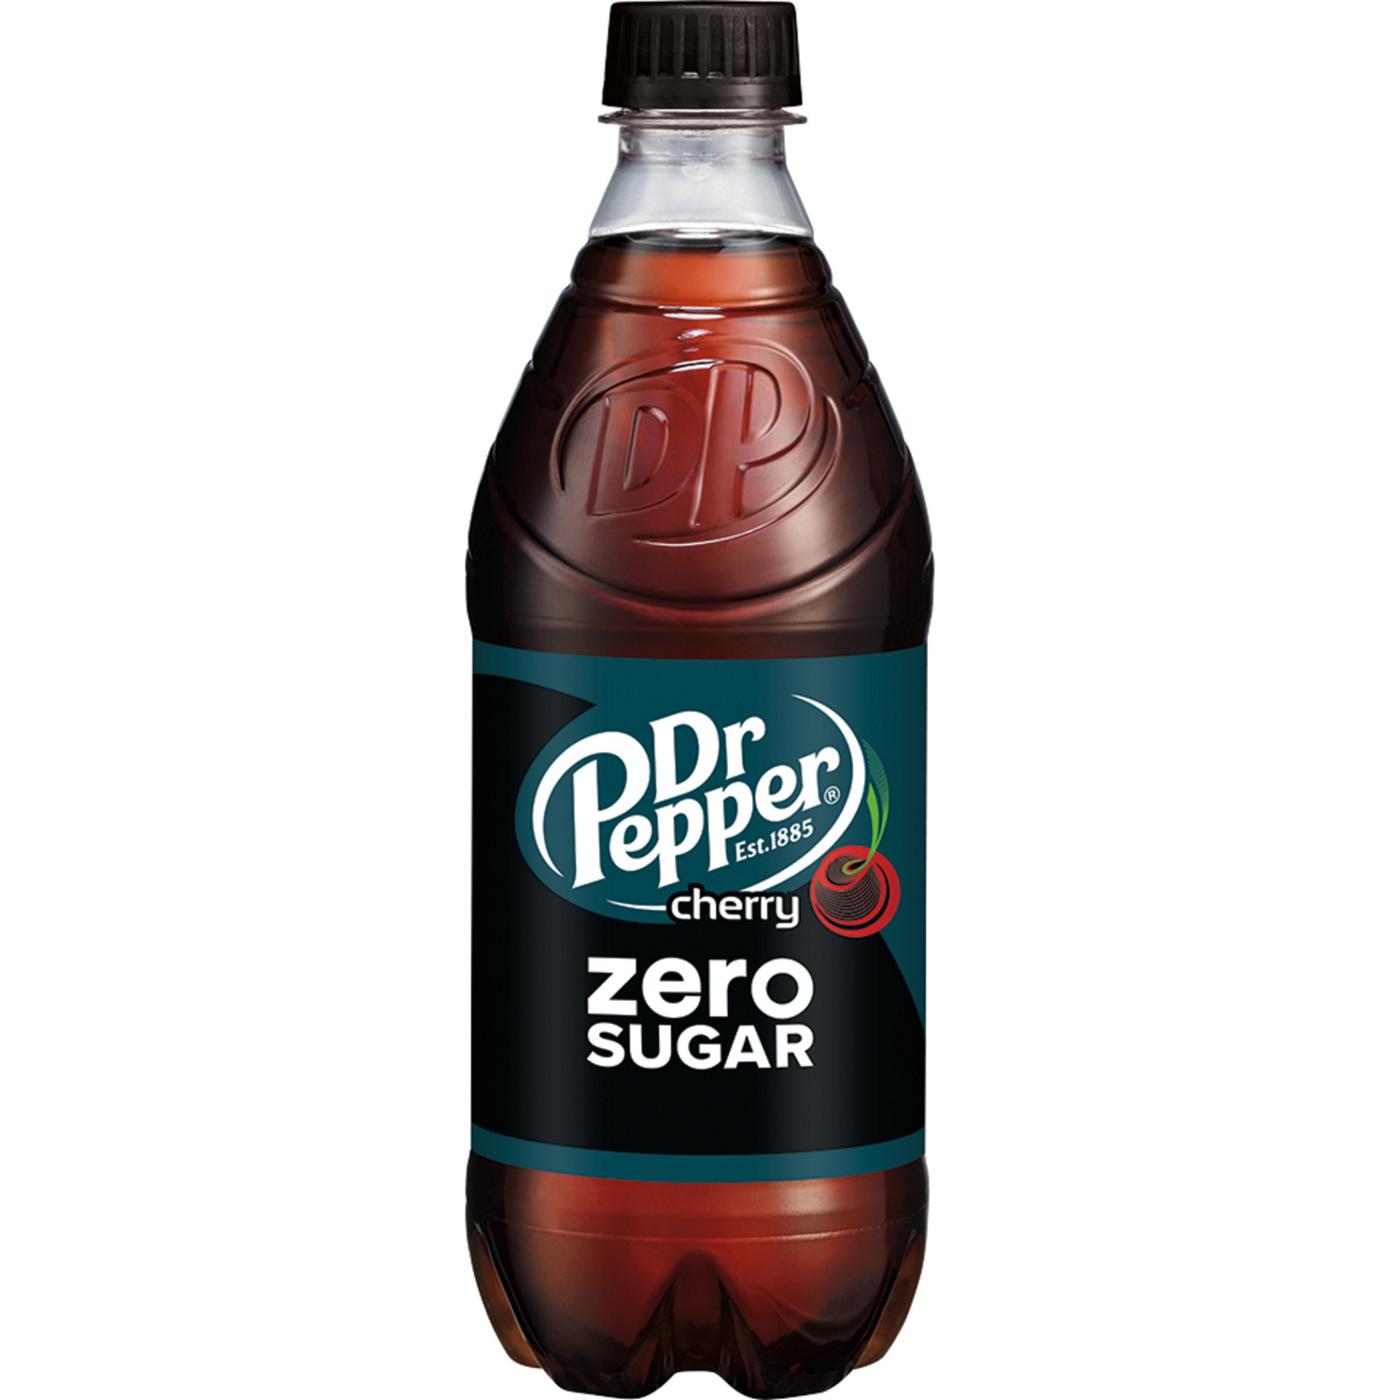 Dr Pepper Cherry Zero Sugar Soda; image 6 of 7